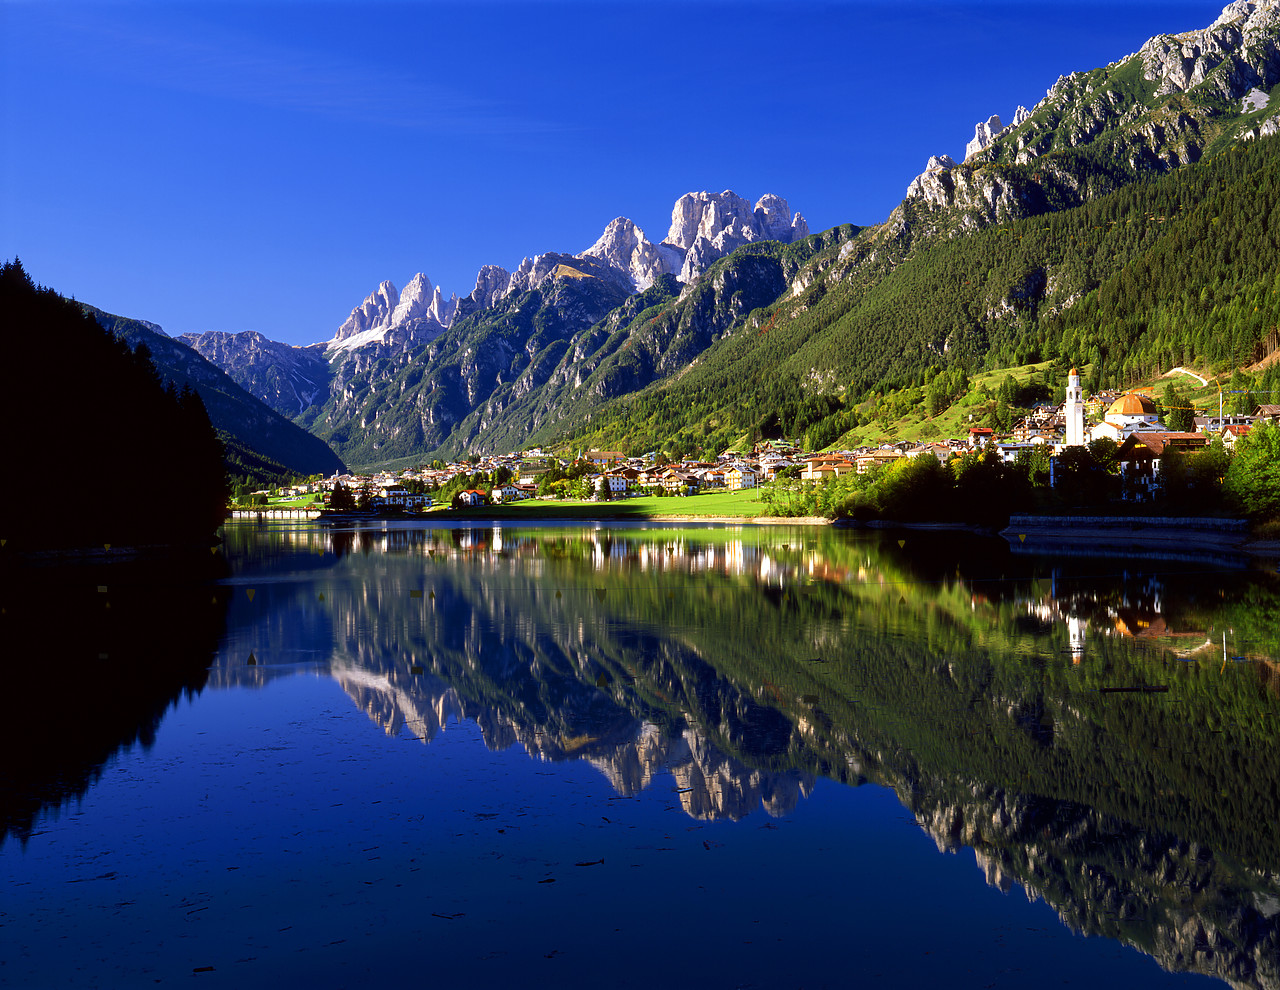 #060614-5 - Lago di Santa Caterina, Auronzo, Dolomites, Italy